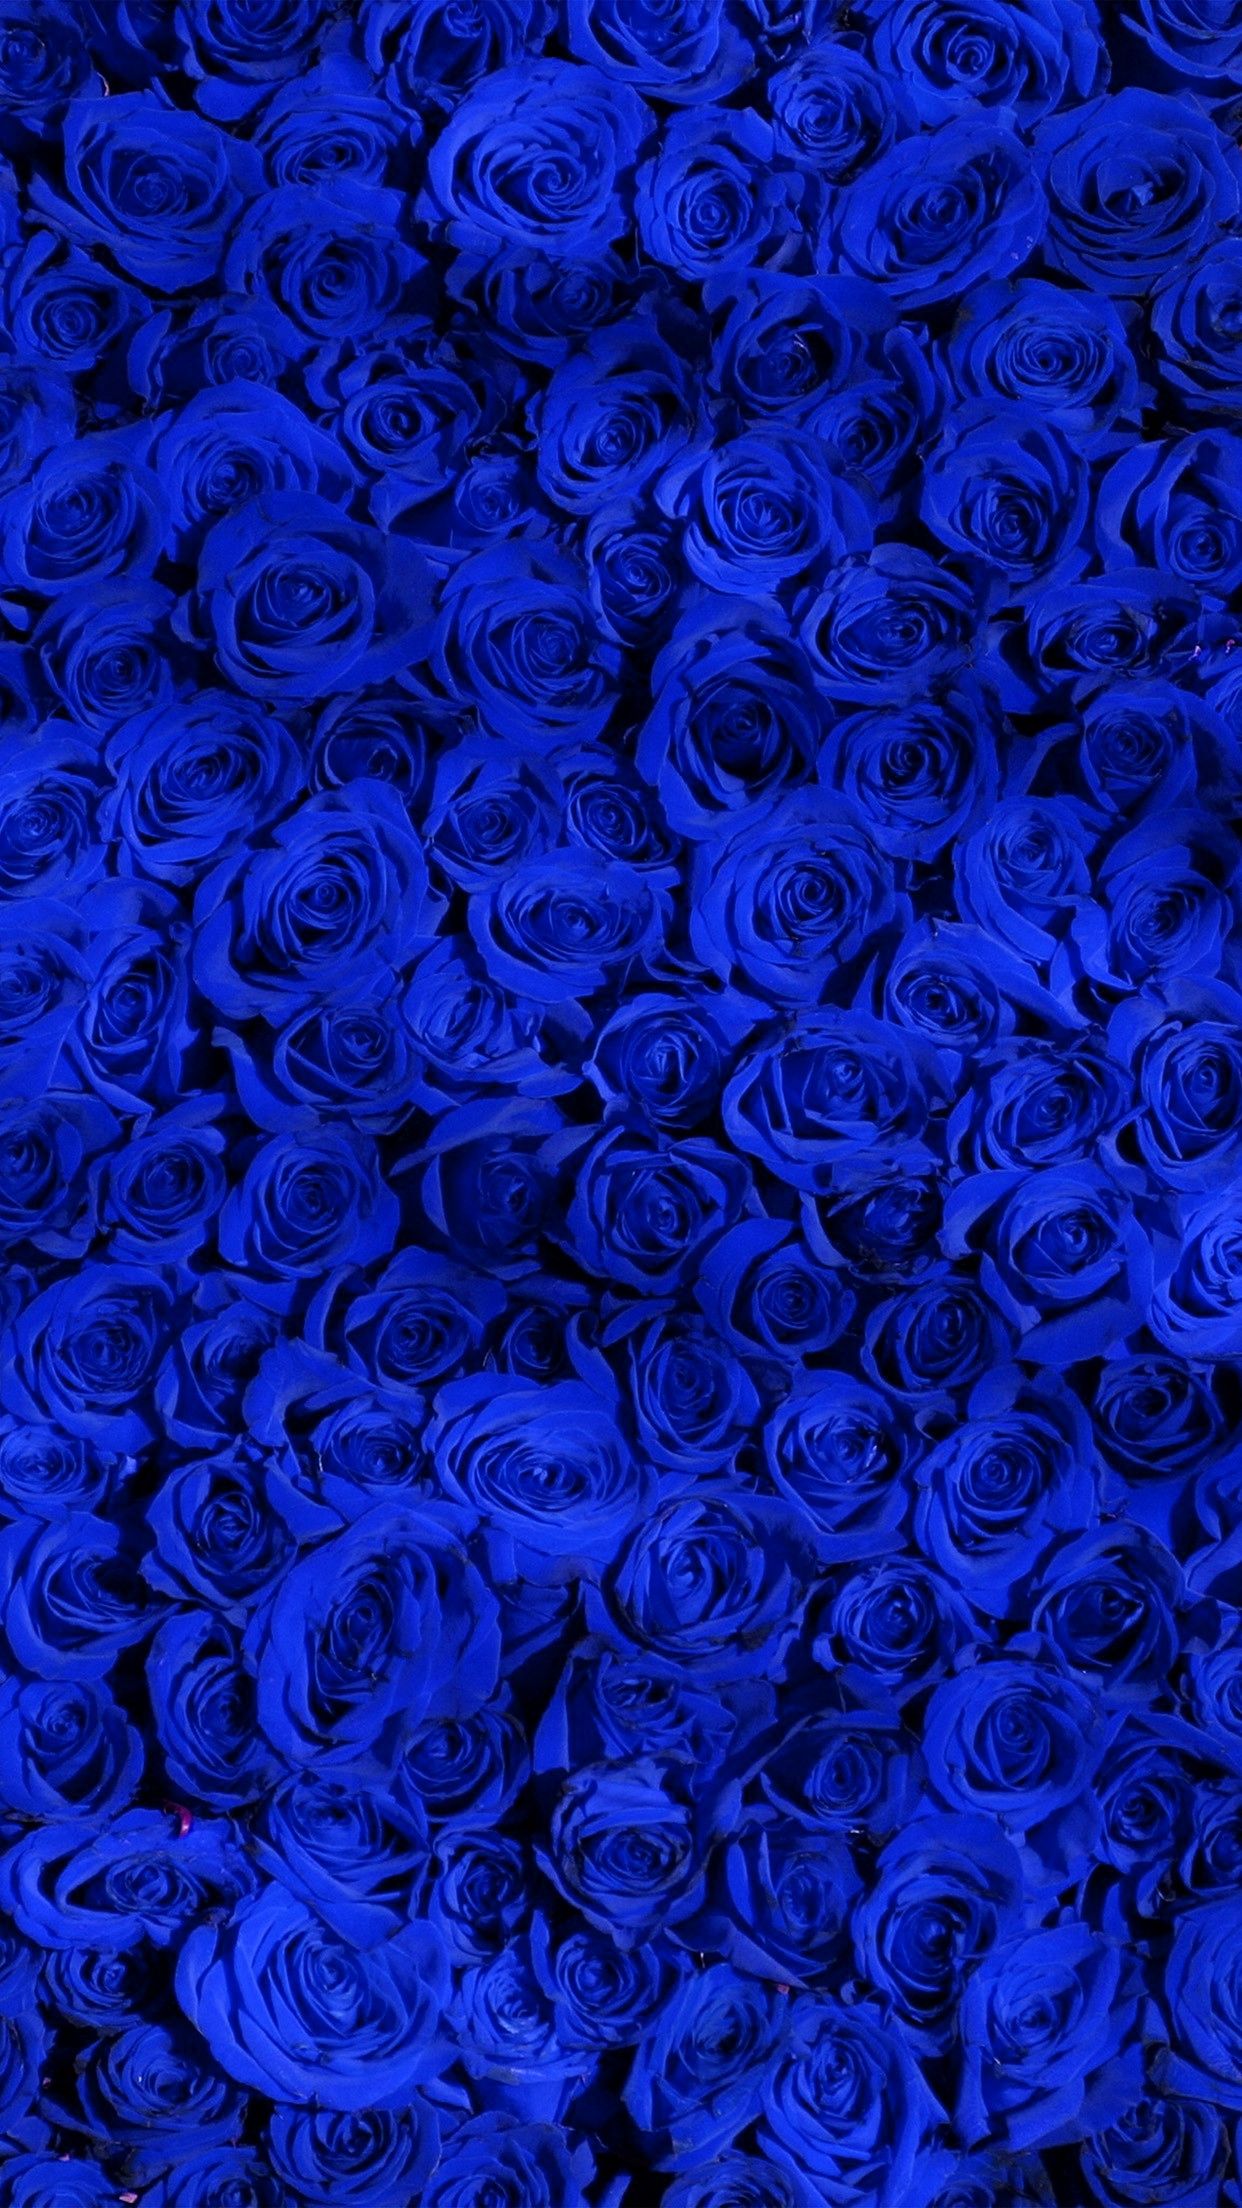 Ảnh hoa hồng xanh cực đẹp